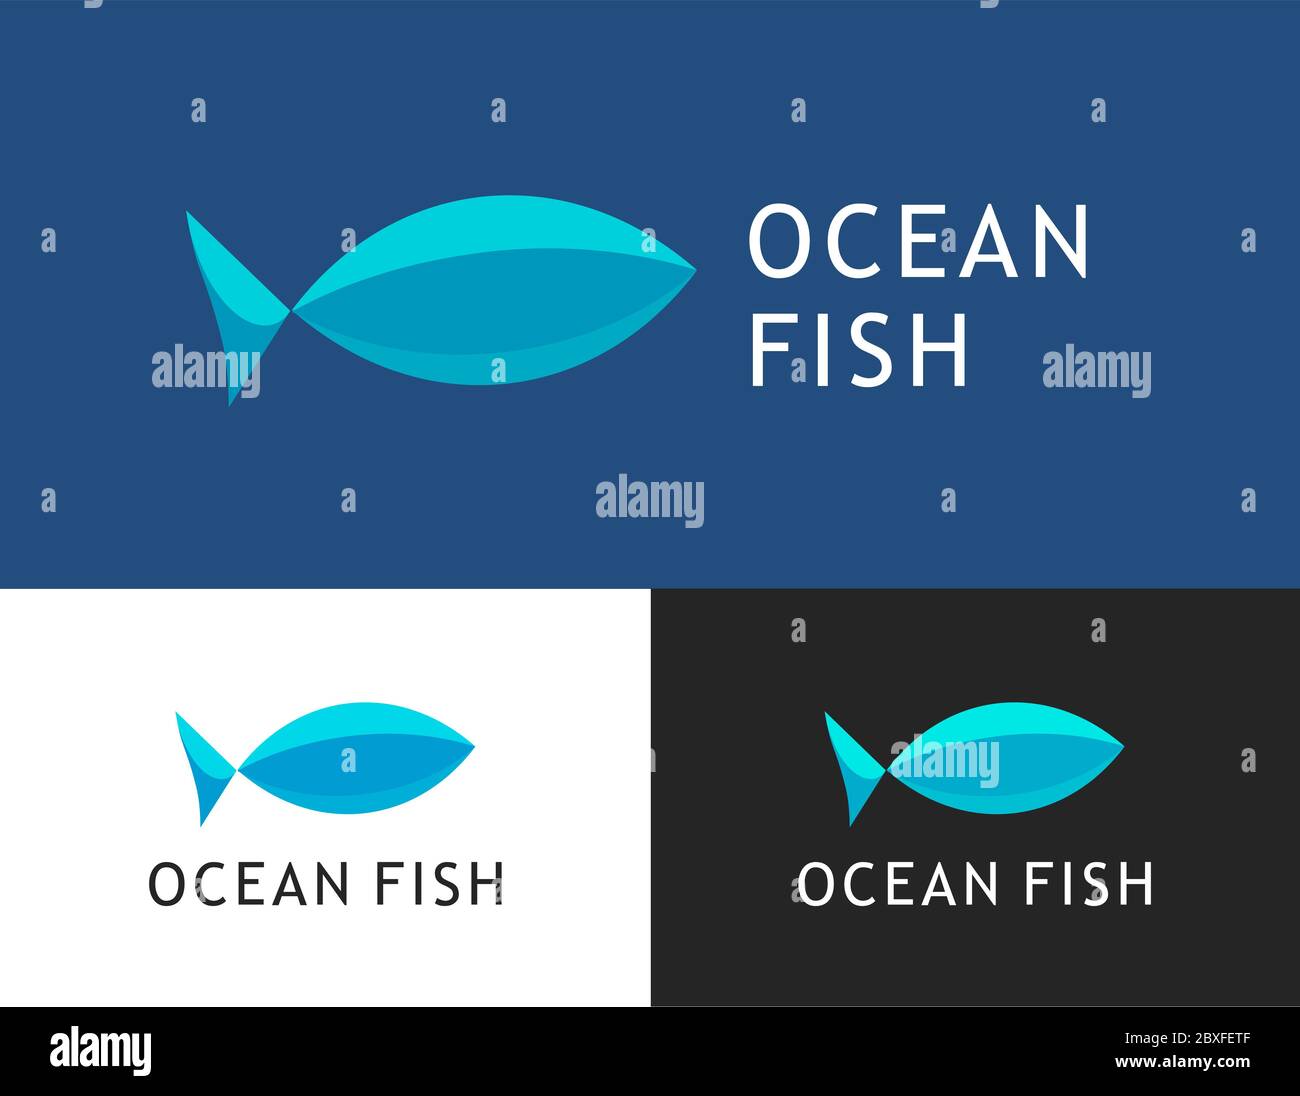 Ocean fish, logotipo vectorial para el mercado de pescado. Ilustración de emblema plano aislada en color azul, blanco y negro Ilustración del Vector